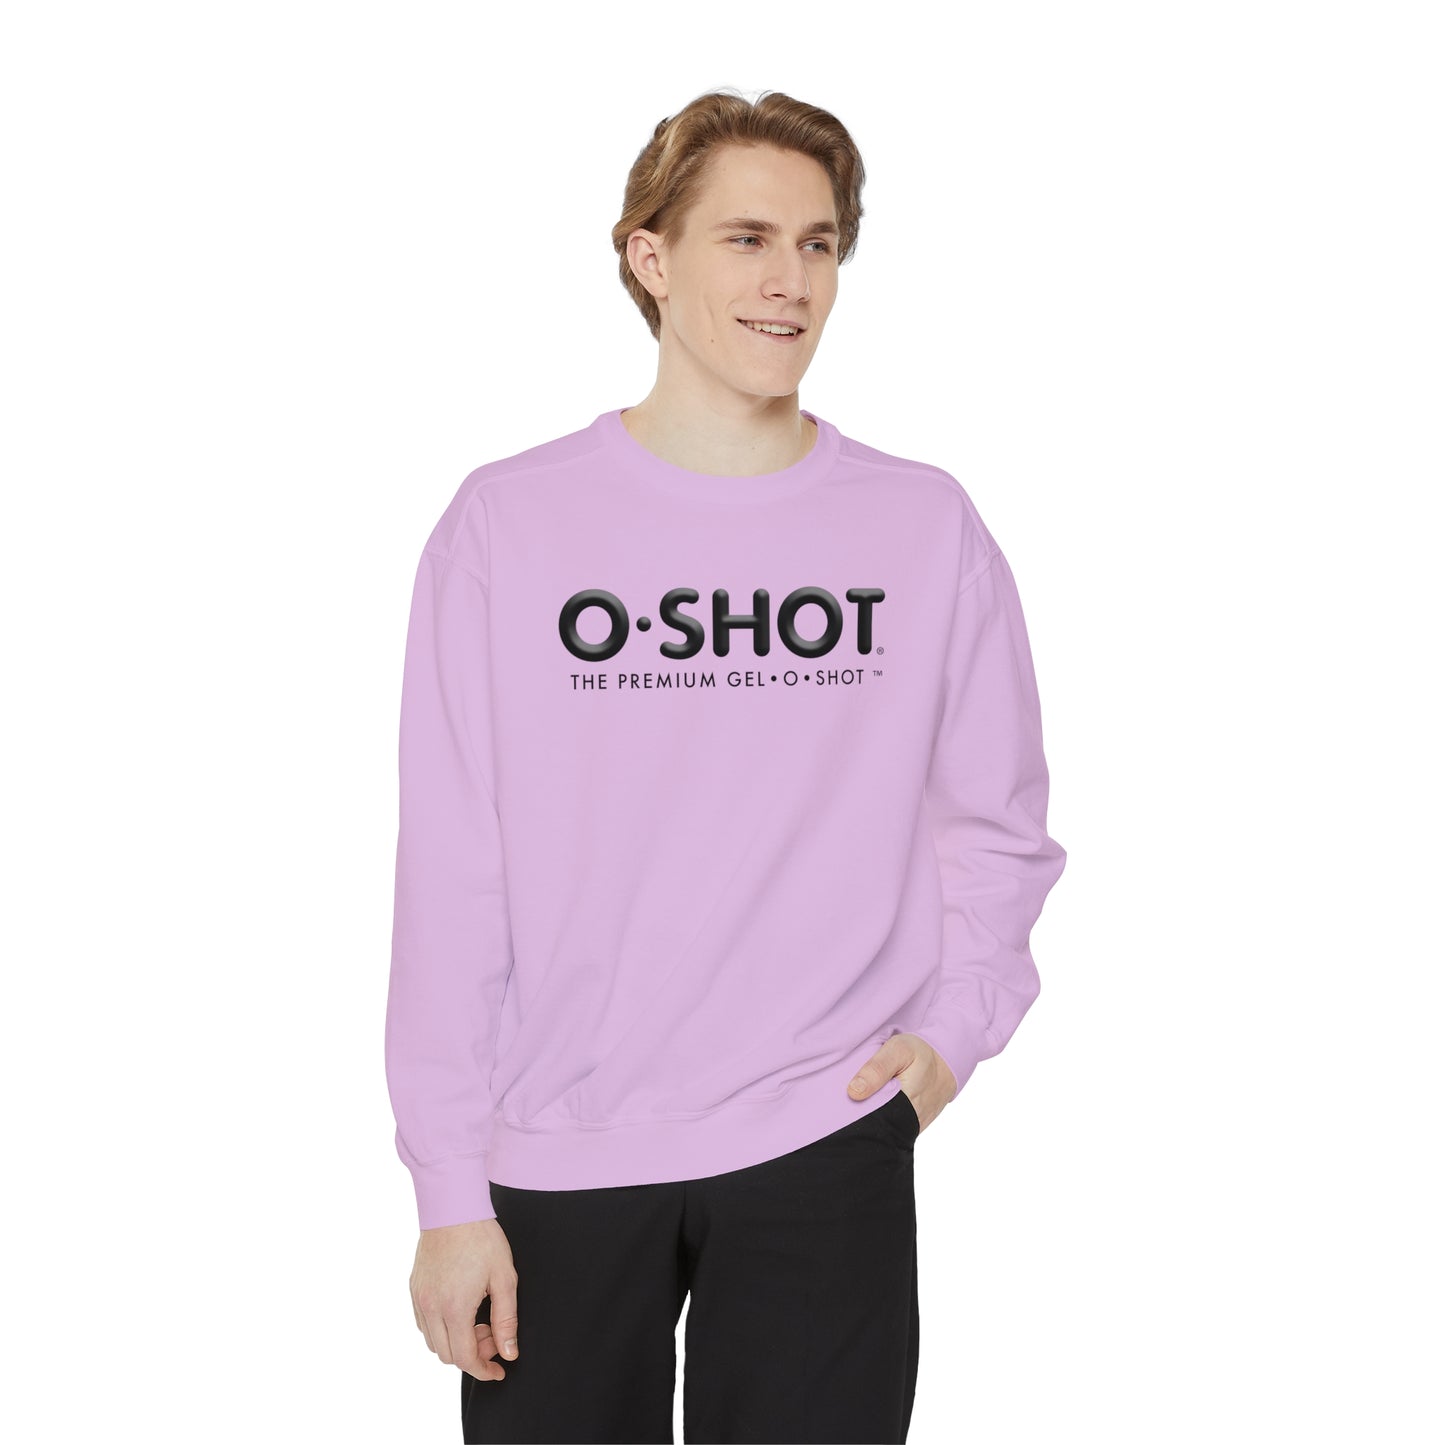 OG O-SHOT Unisex Garment-Dyed Sweatshirt